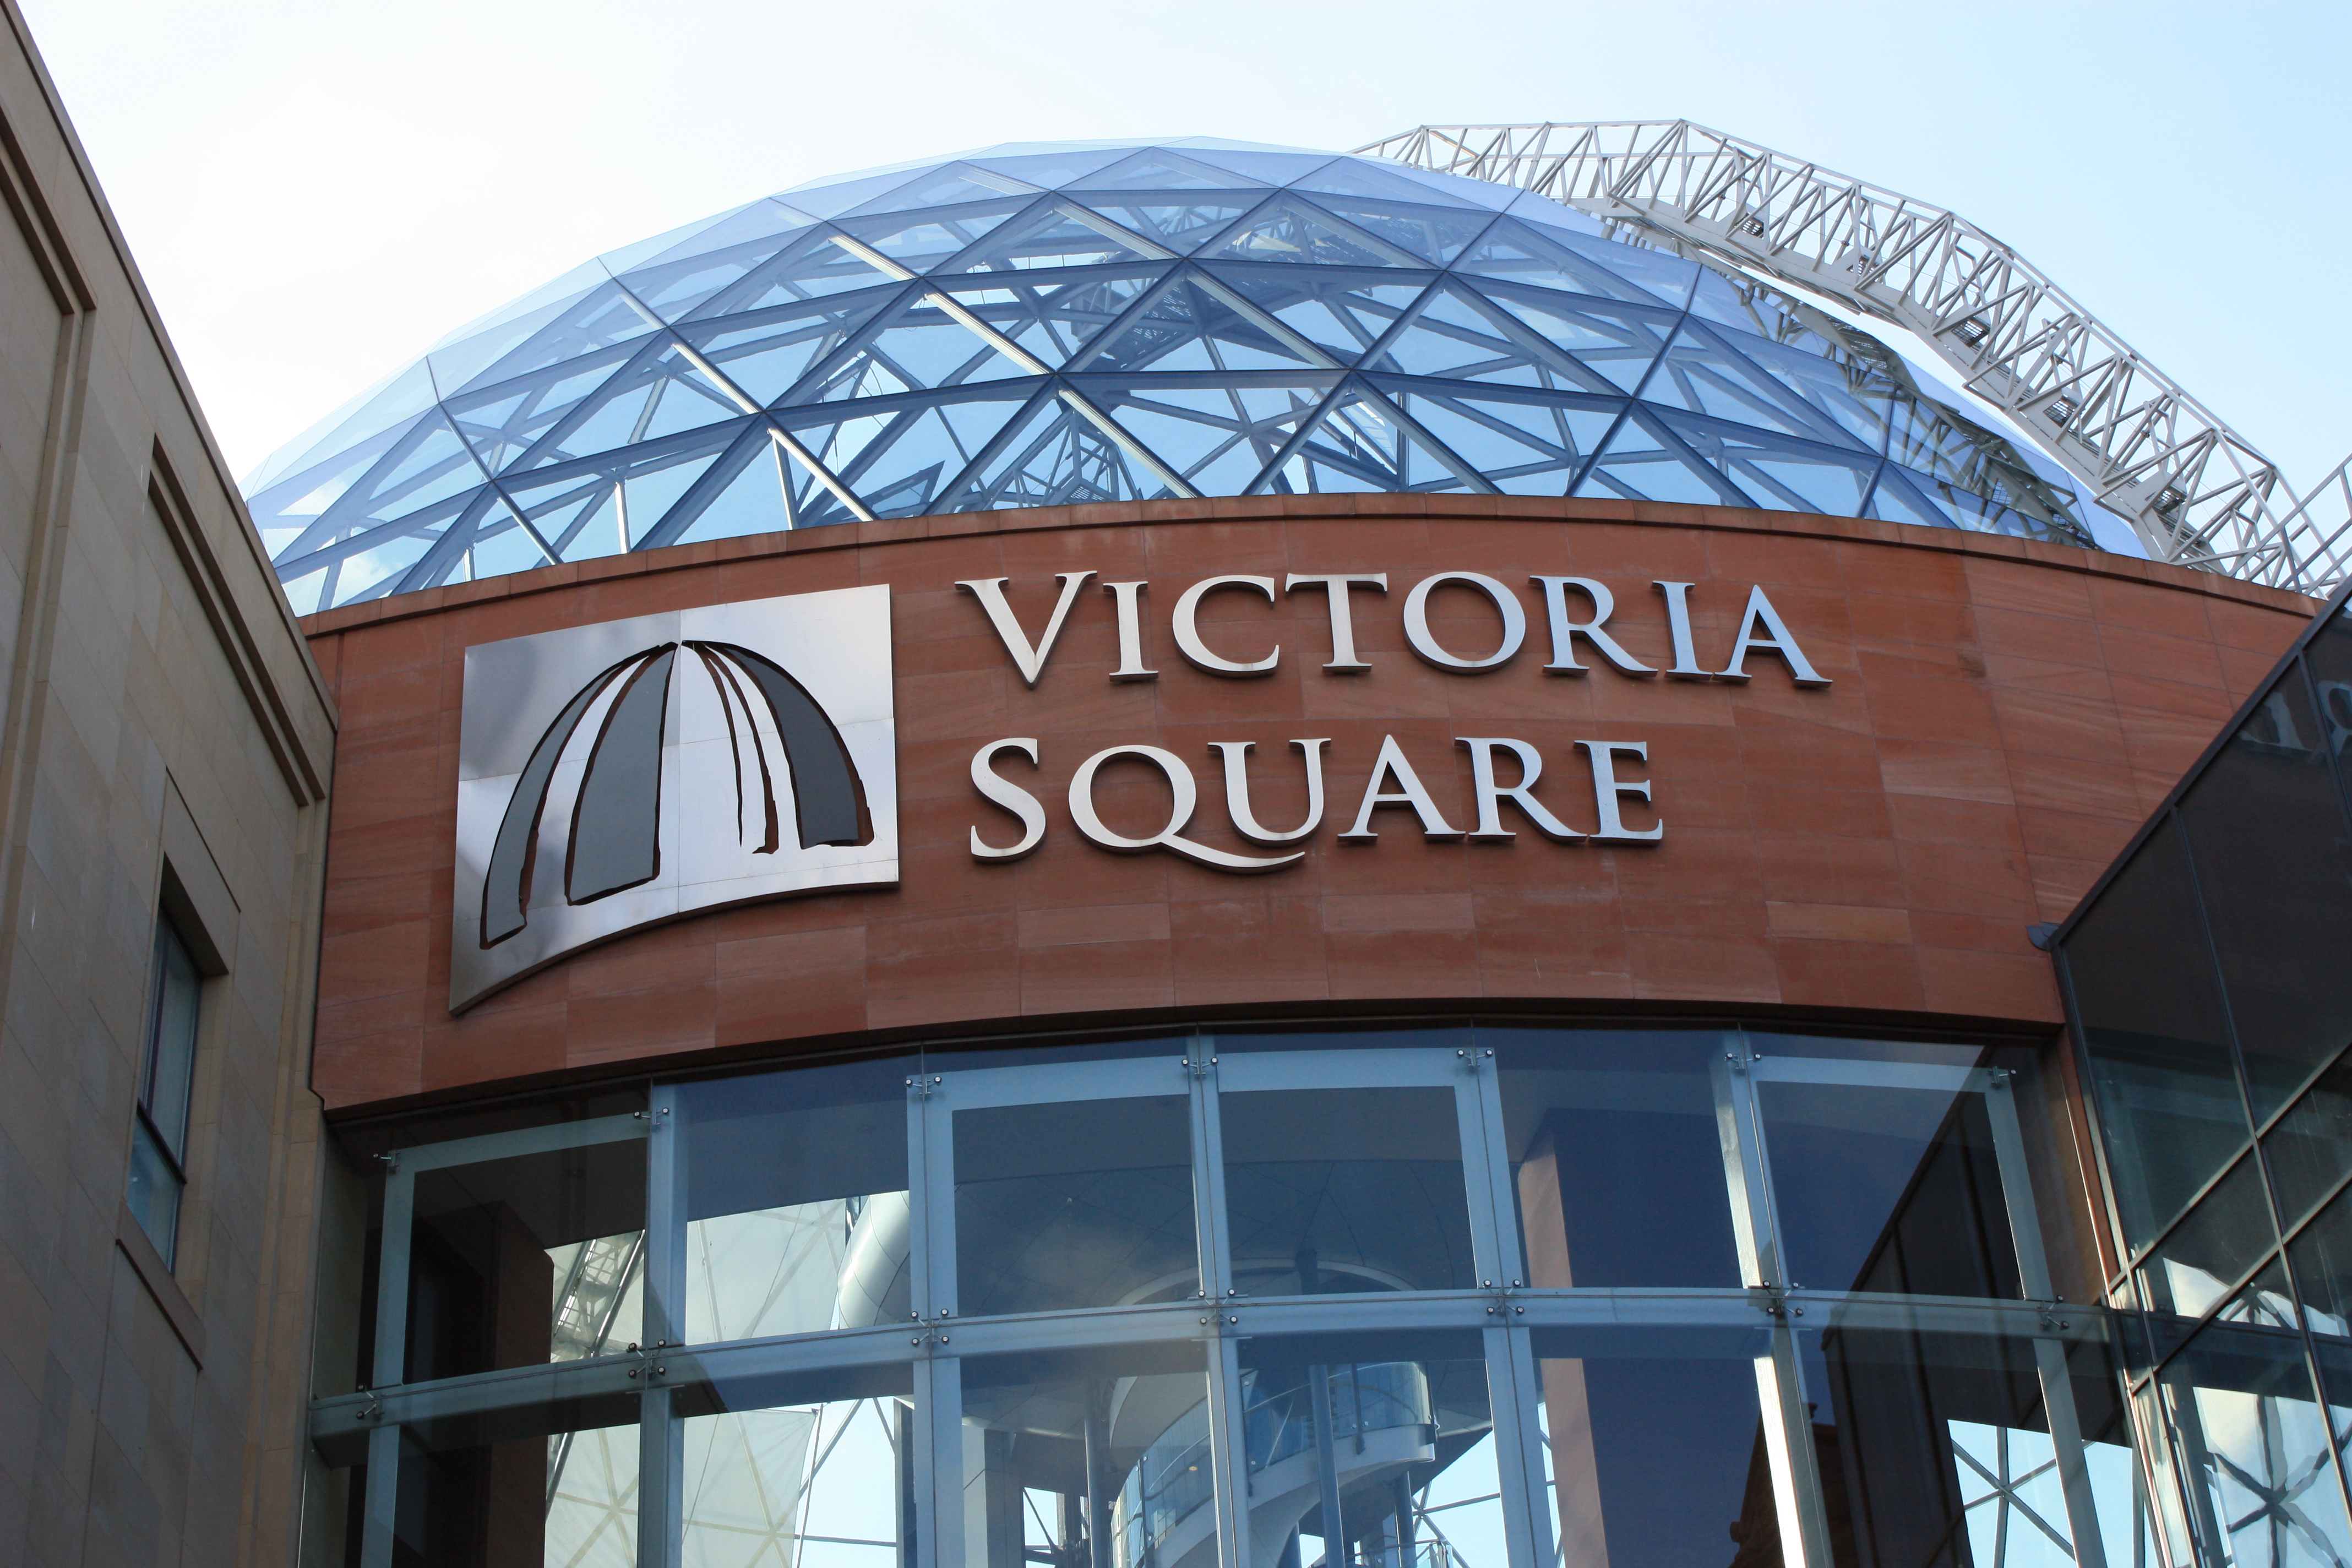 Victoria Square, Belfast